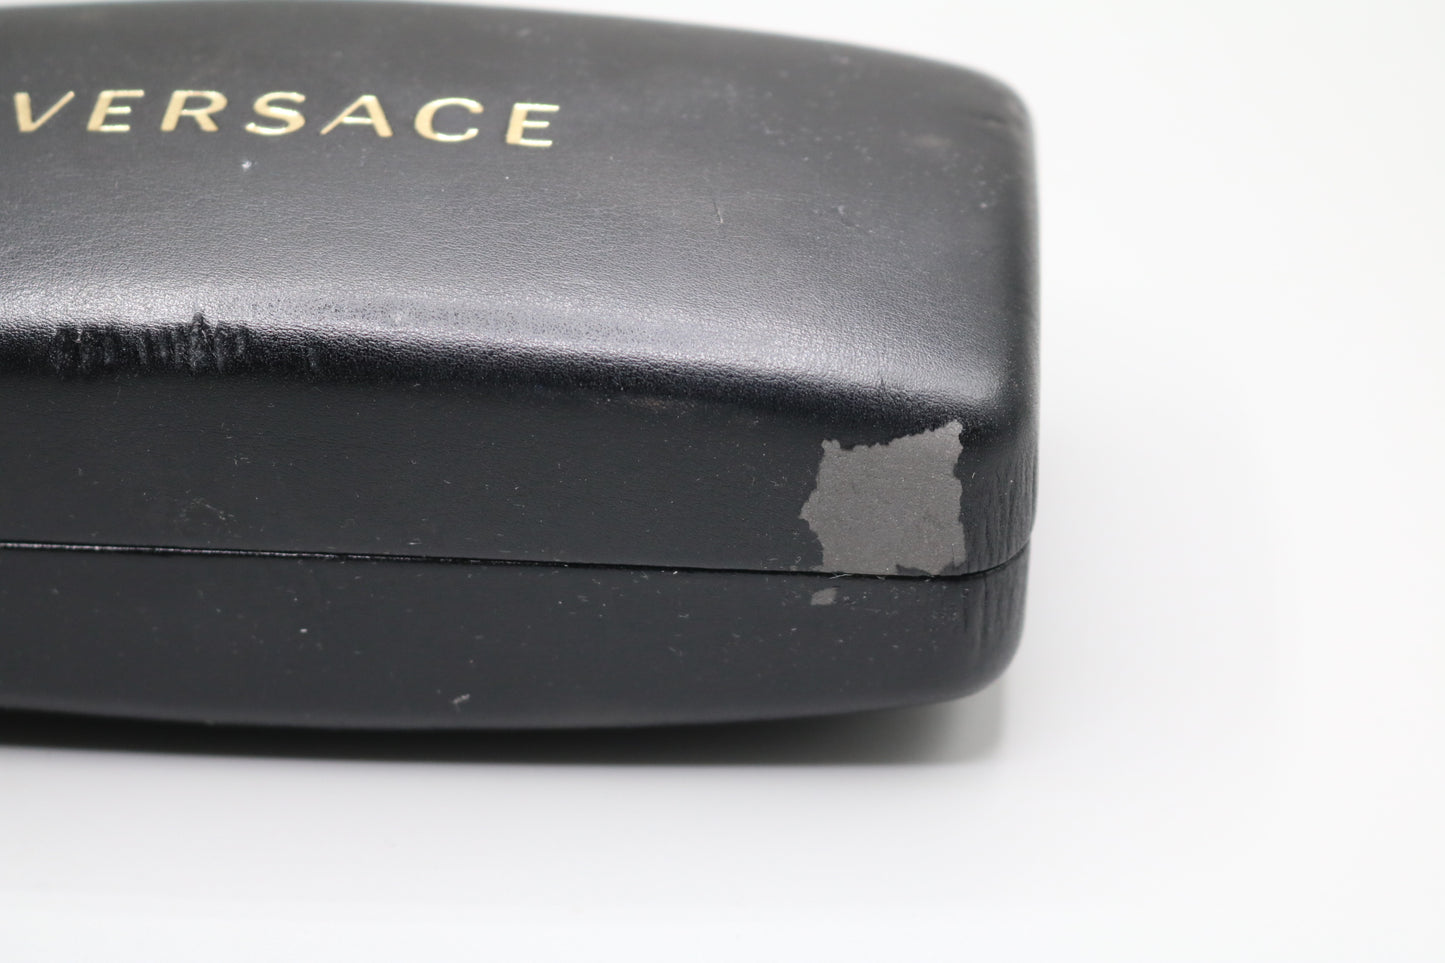 Versace 4179 Black Square Polarized Sunglasses w/case